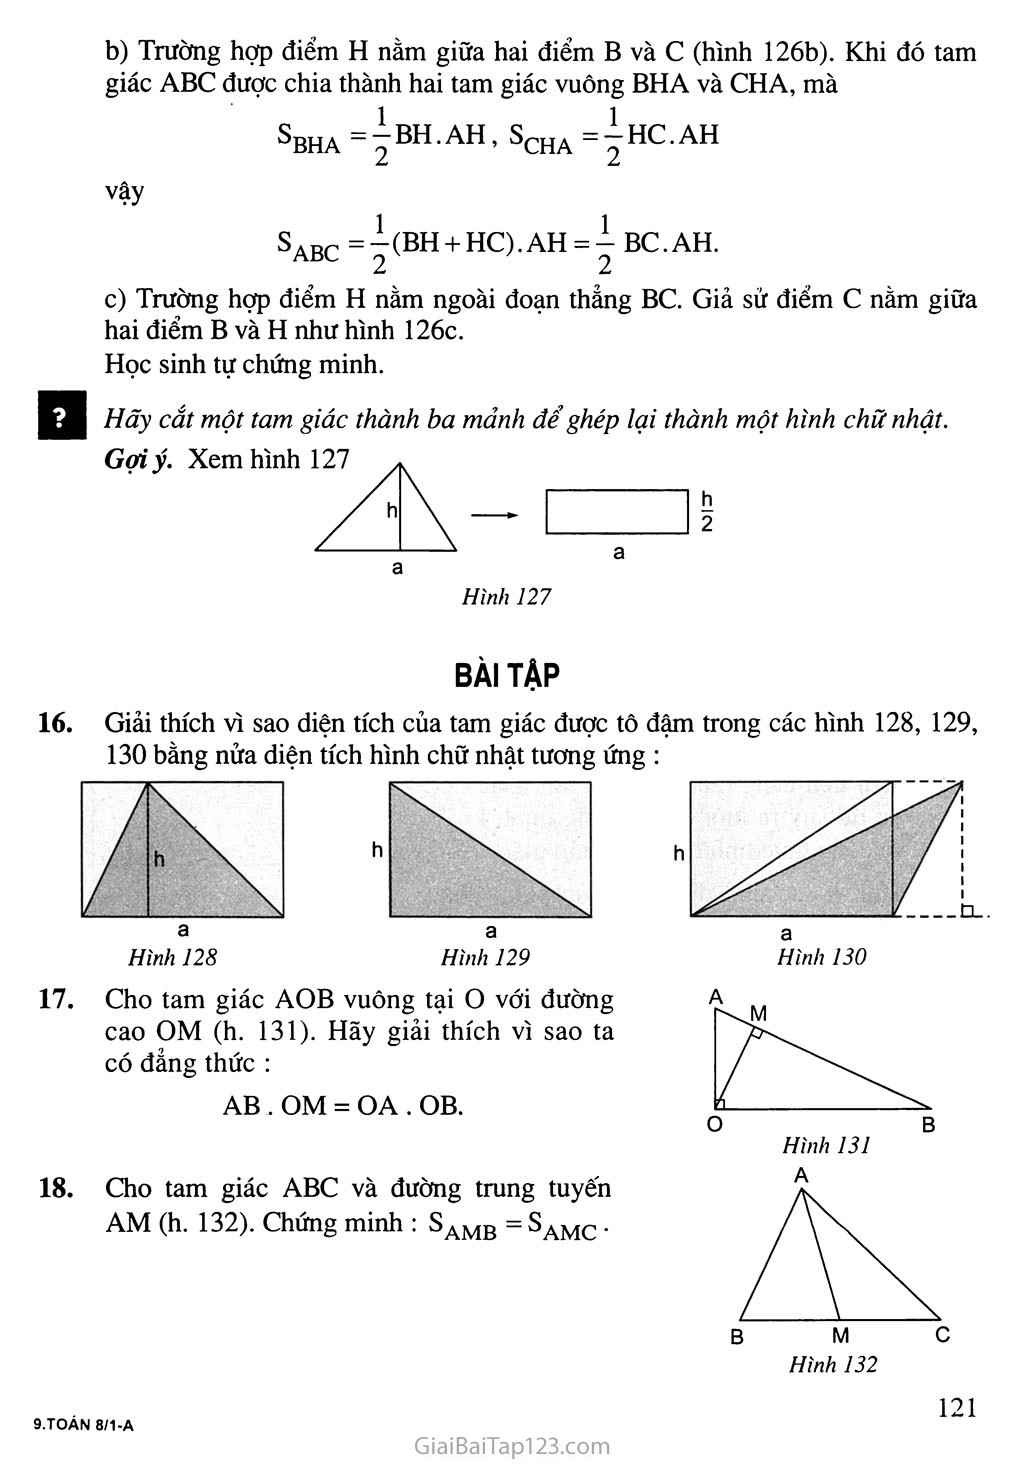 Bài 3. Diện tích tam giác trang 2